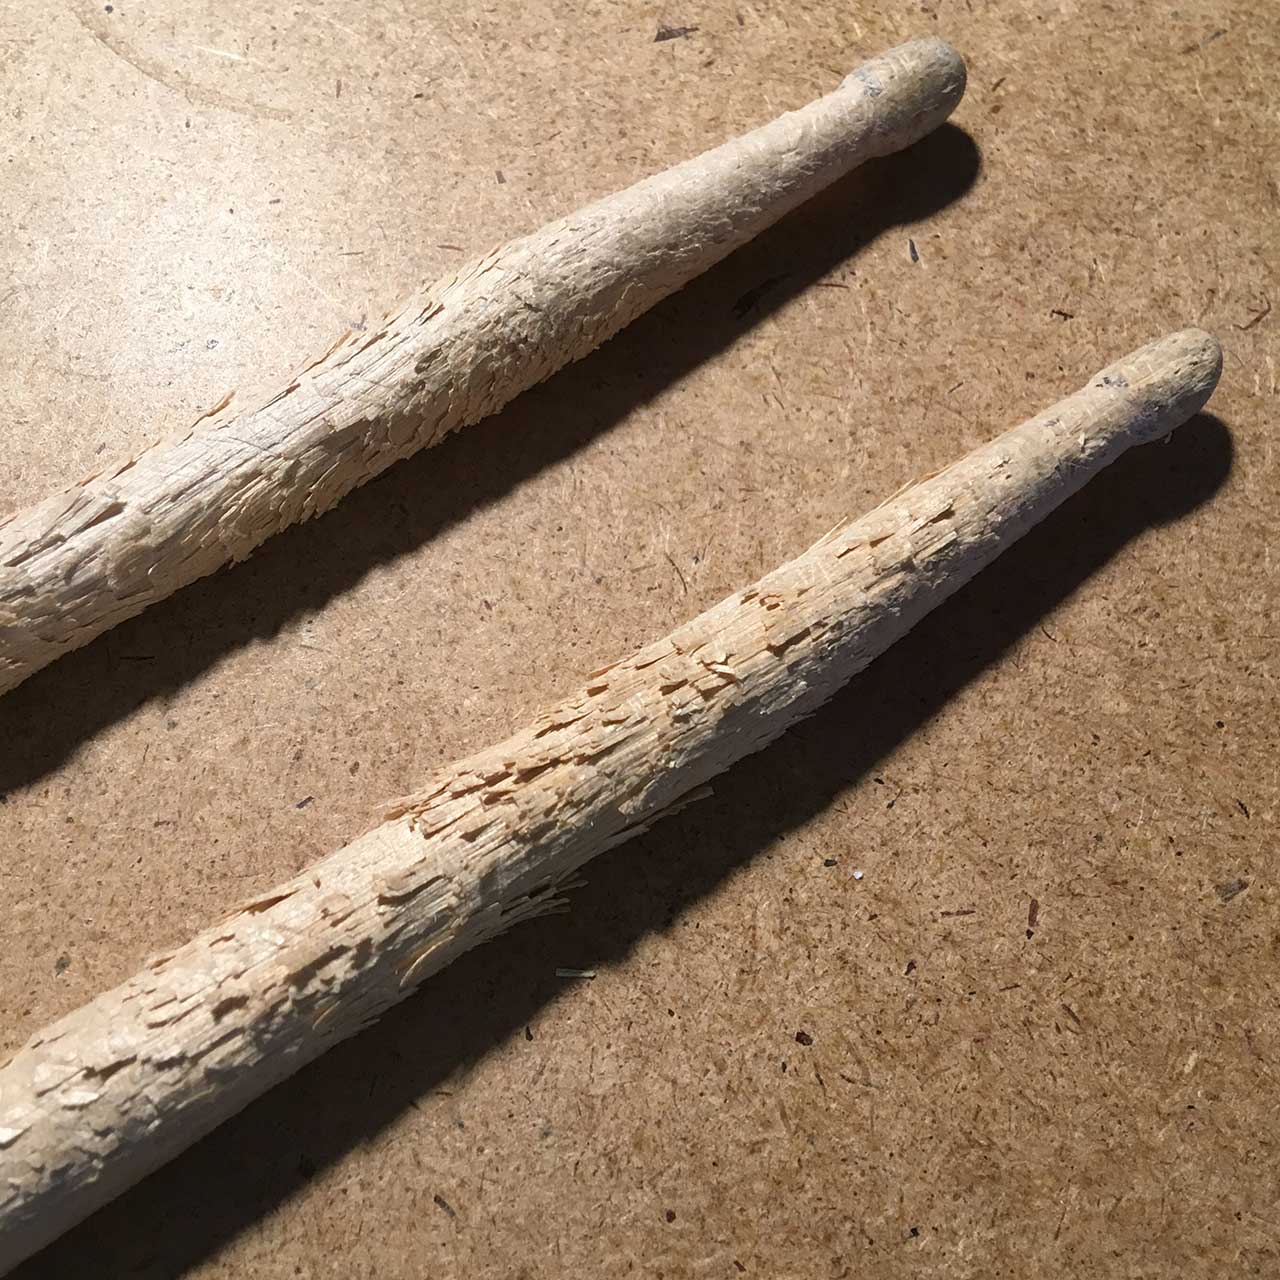 sticks